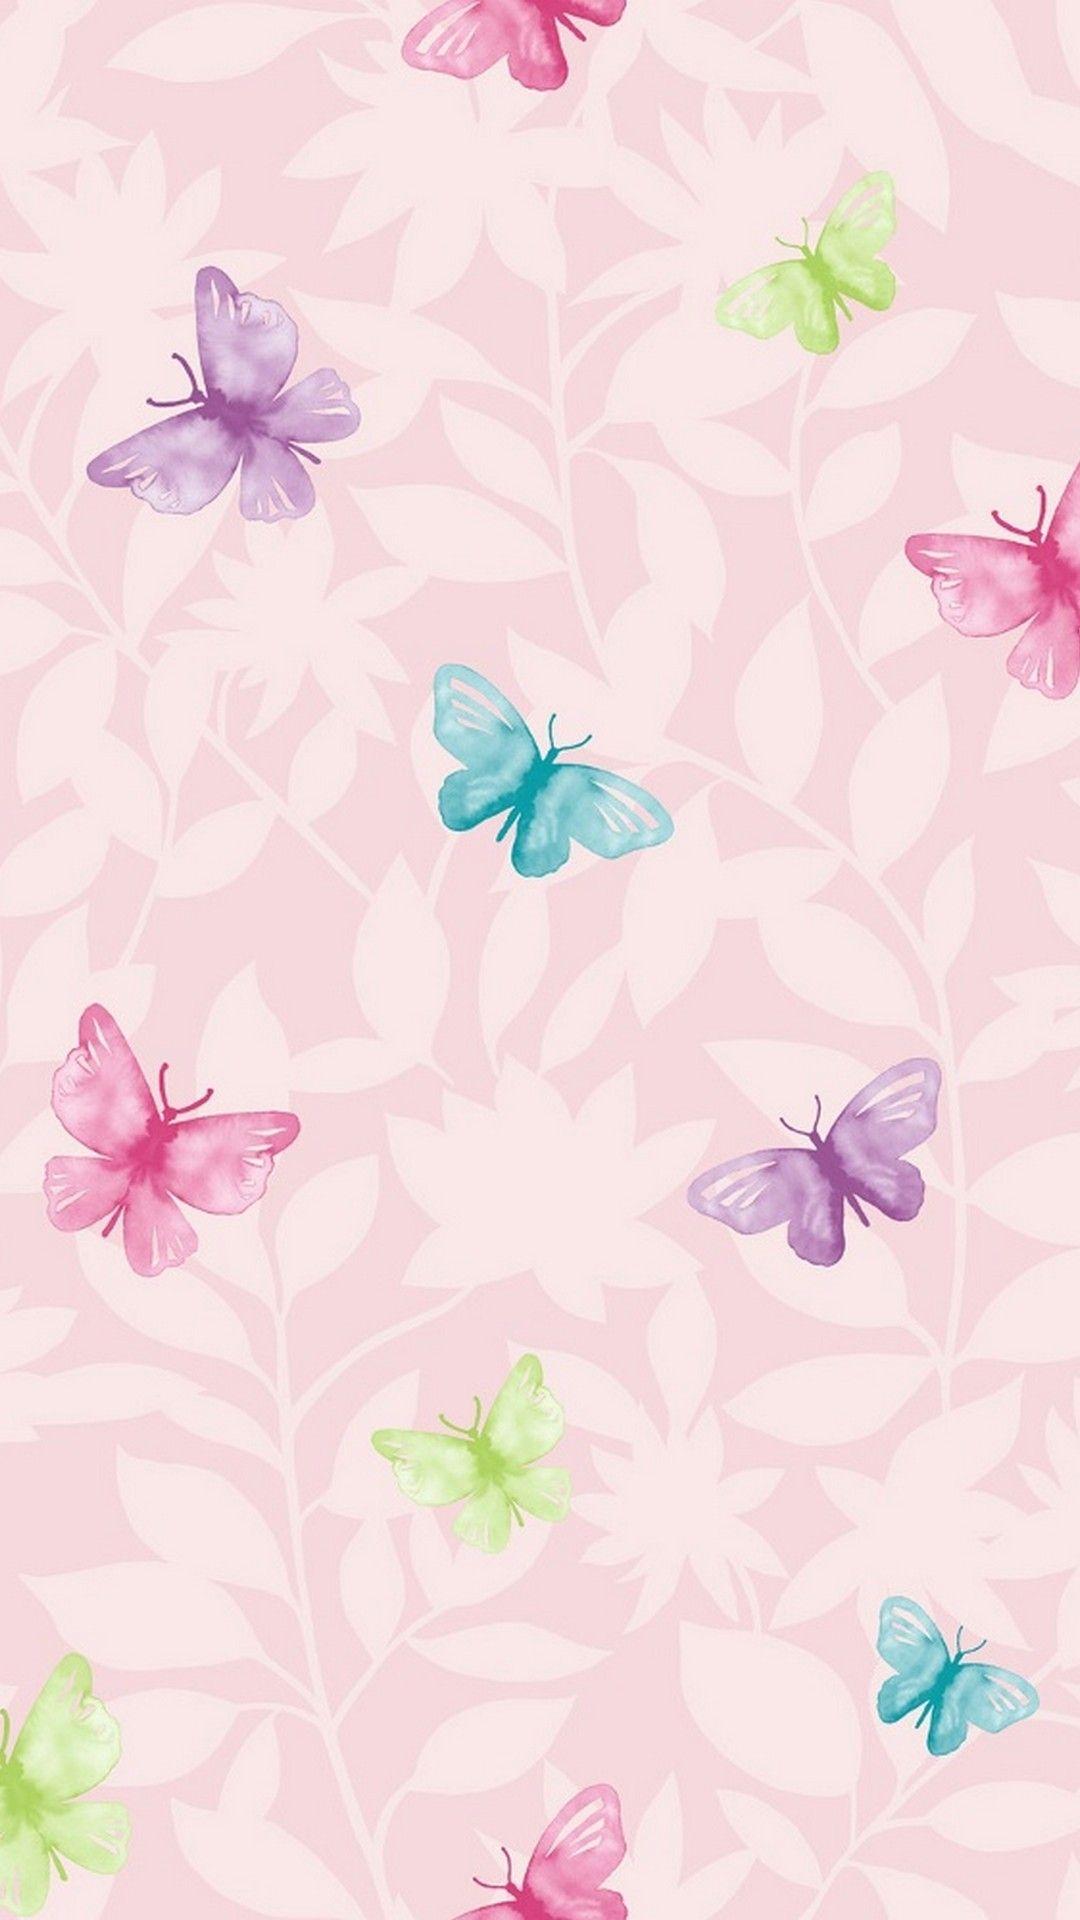 Wallpaper Pink Butterfly Mobile. Best HD Wallpaper in 2019